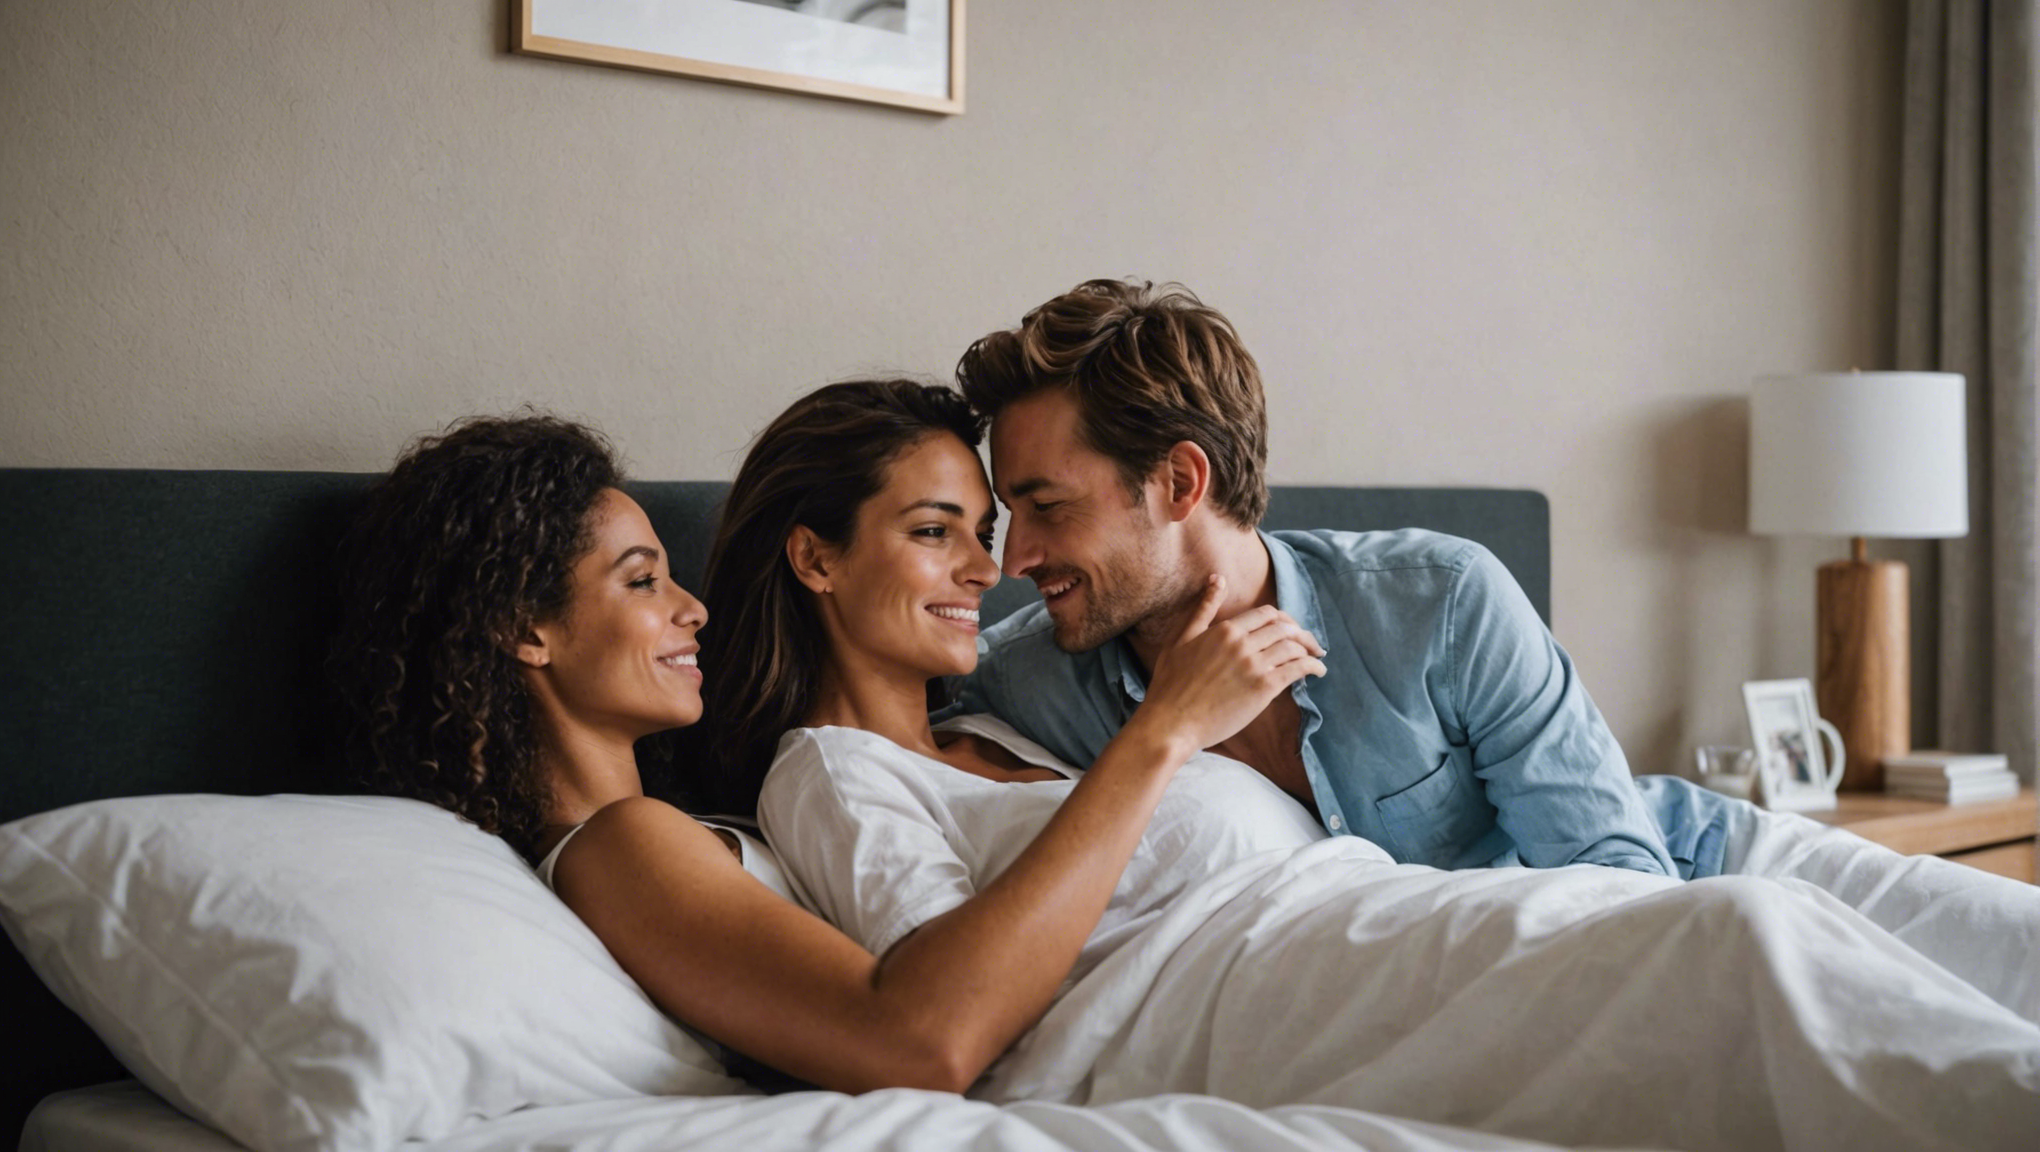 découvrez nos conseils pour réussir une magnifique photo de couple amoureux dans un lit. astuces, poses et éclairages pour des images romantiques et intimes.